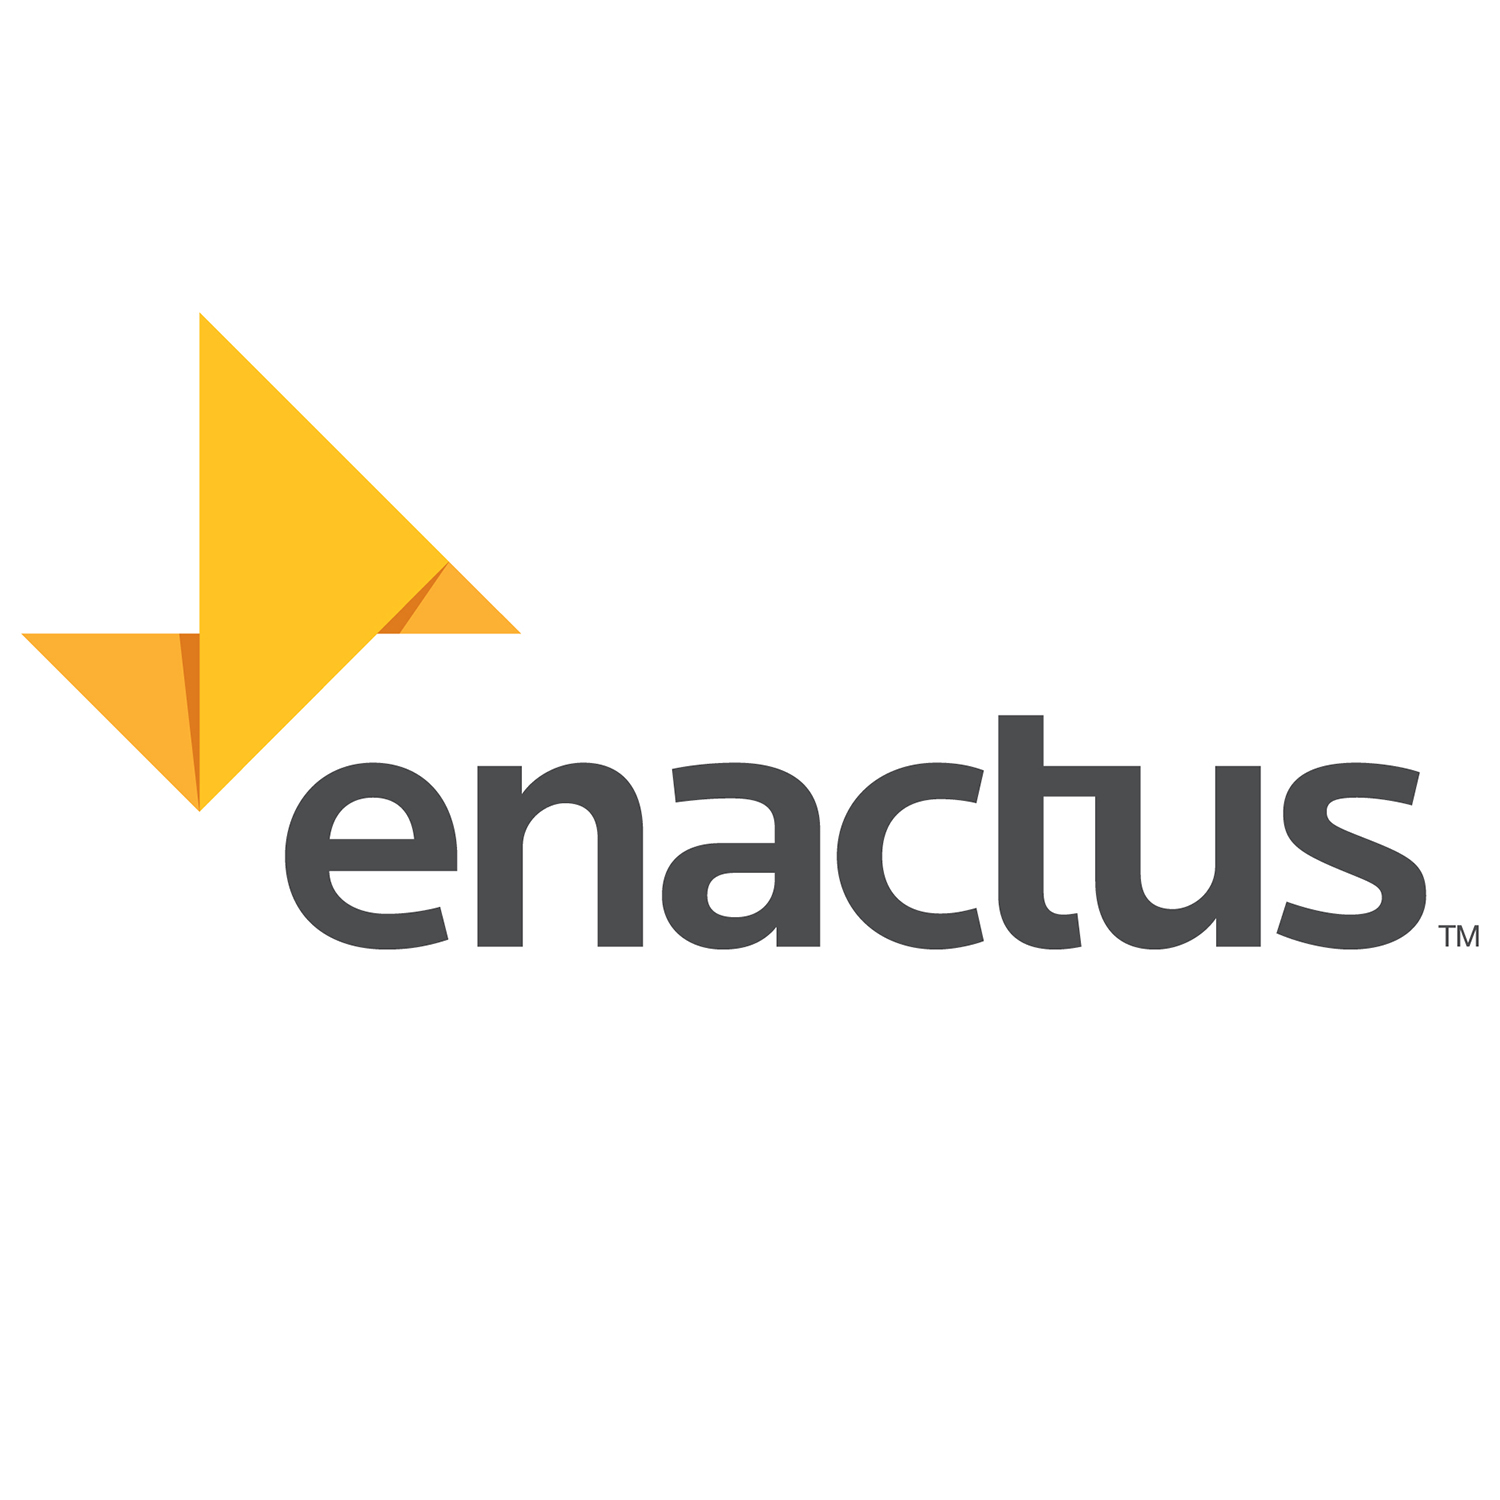 enacts-logo